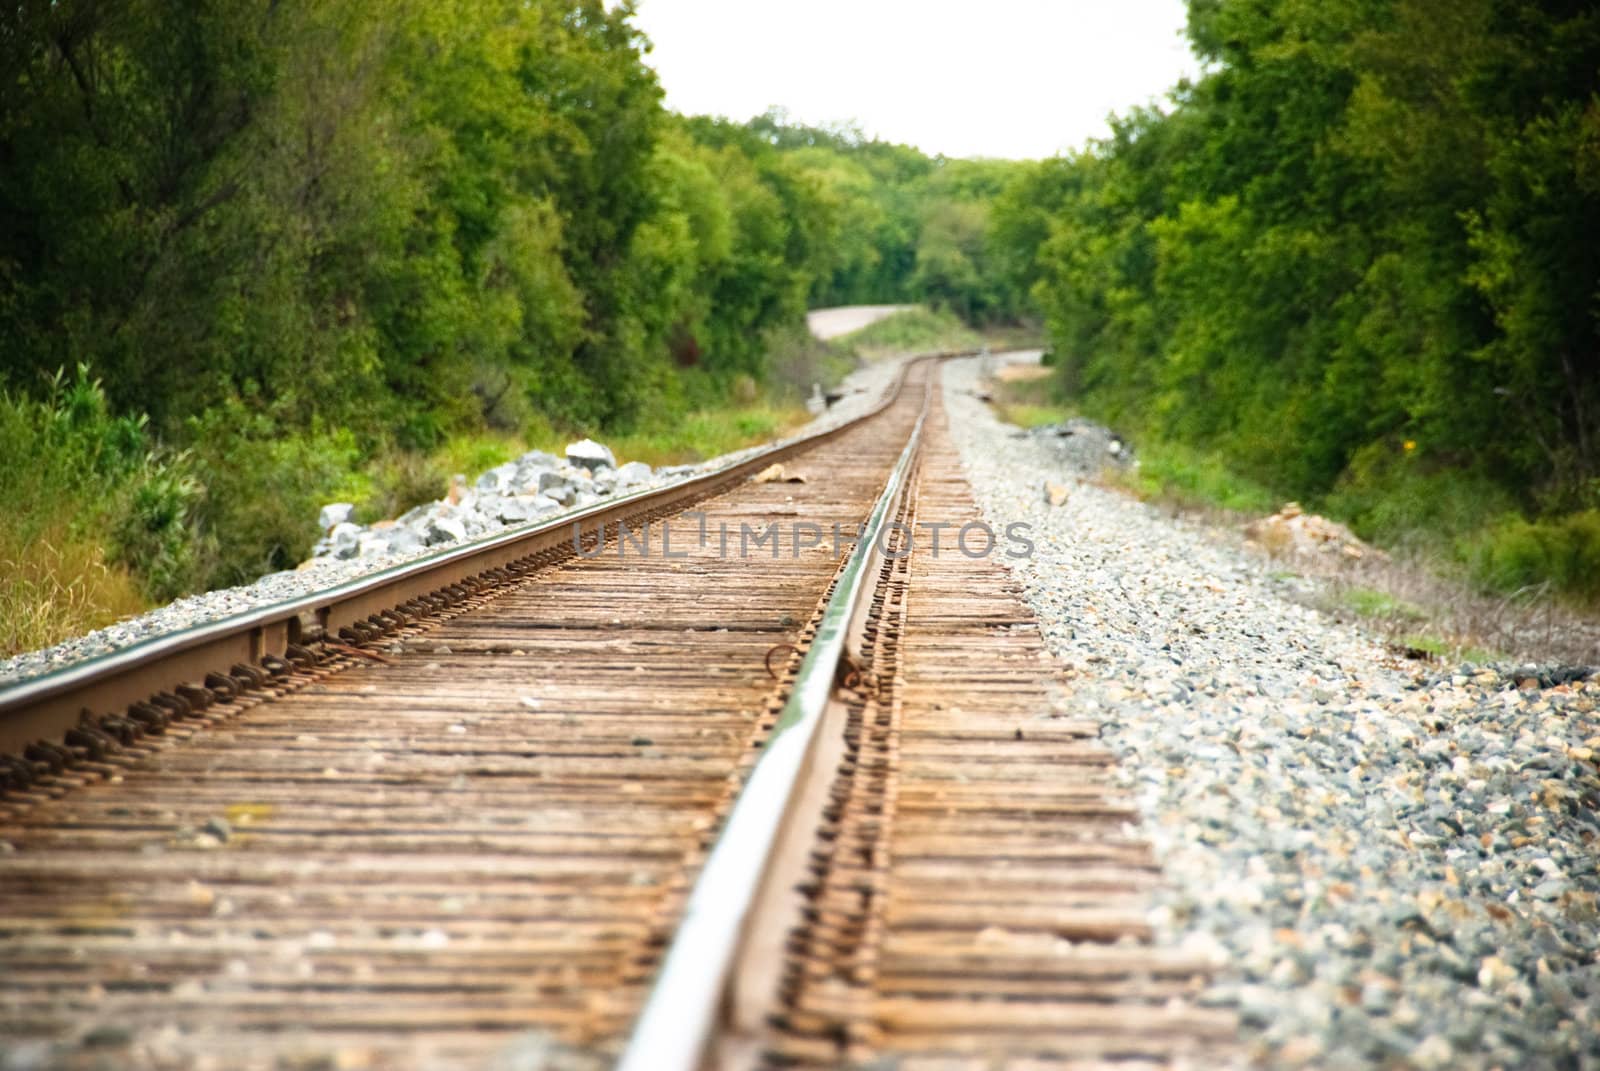 Railway tracks on a sunny day.